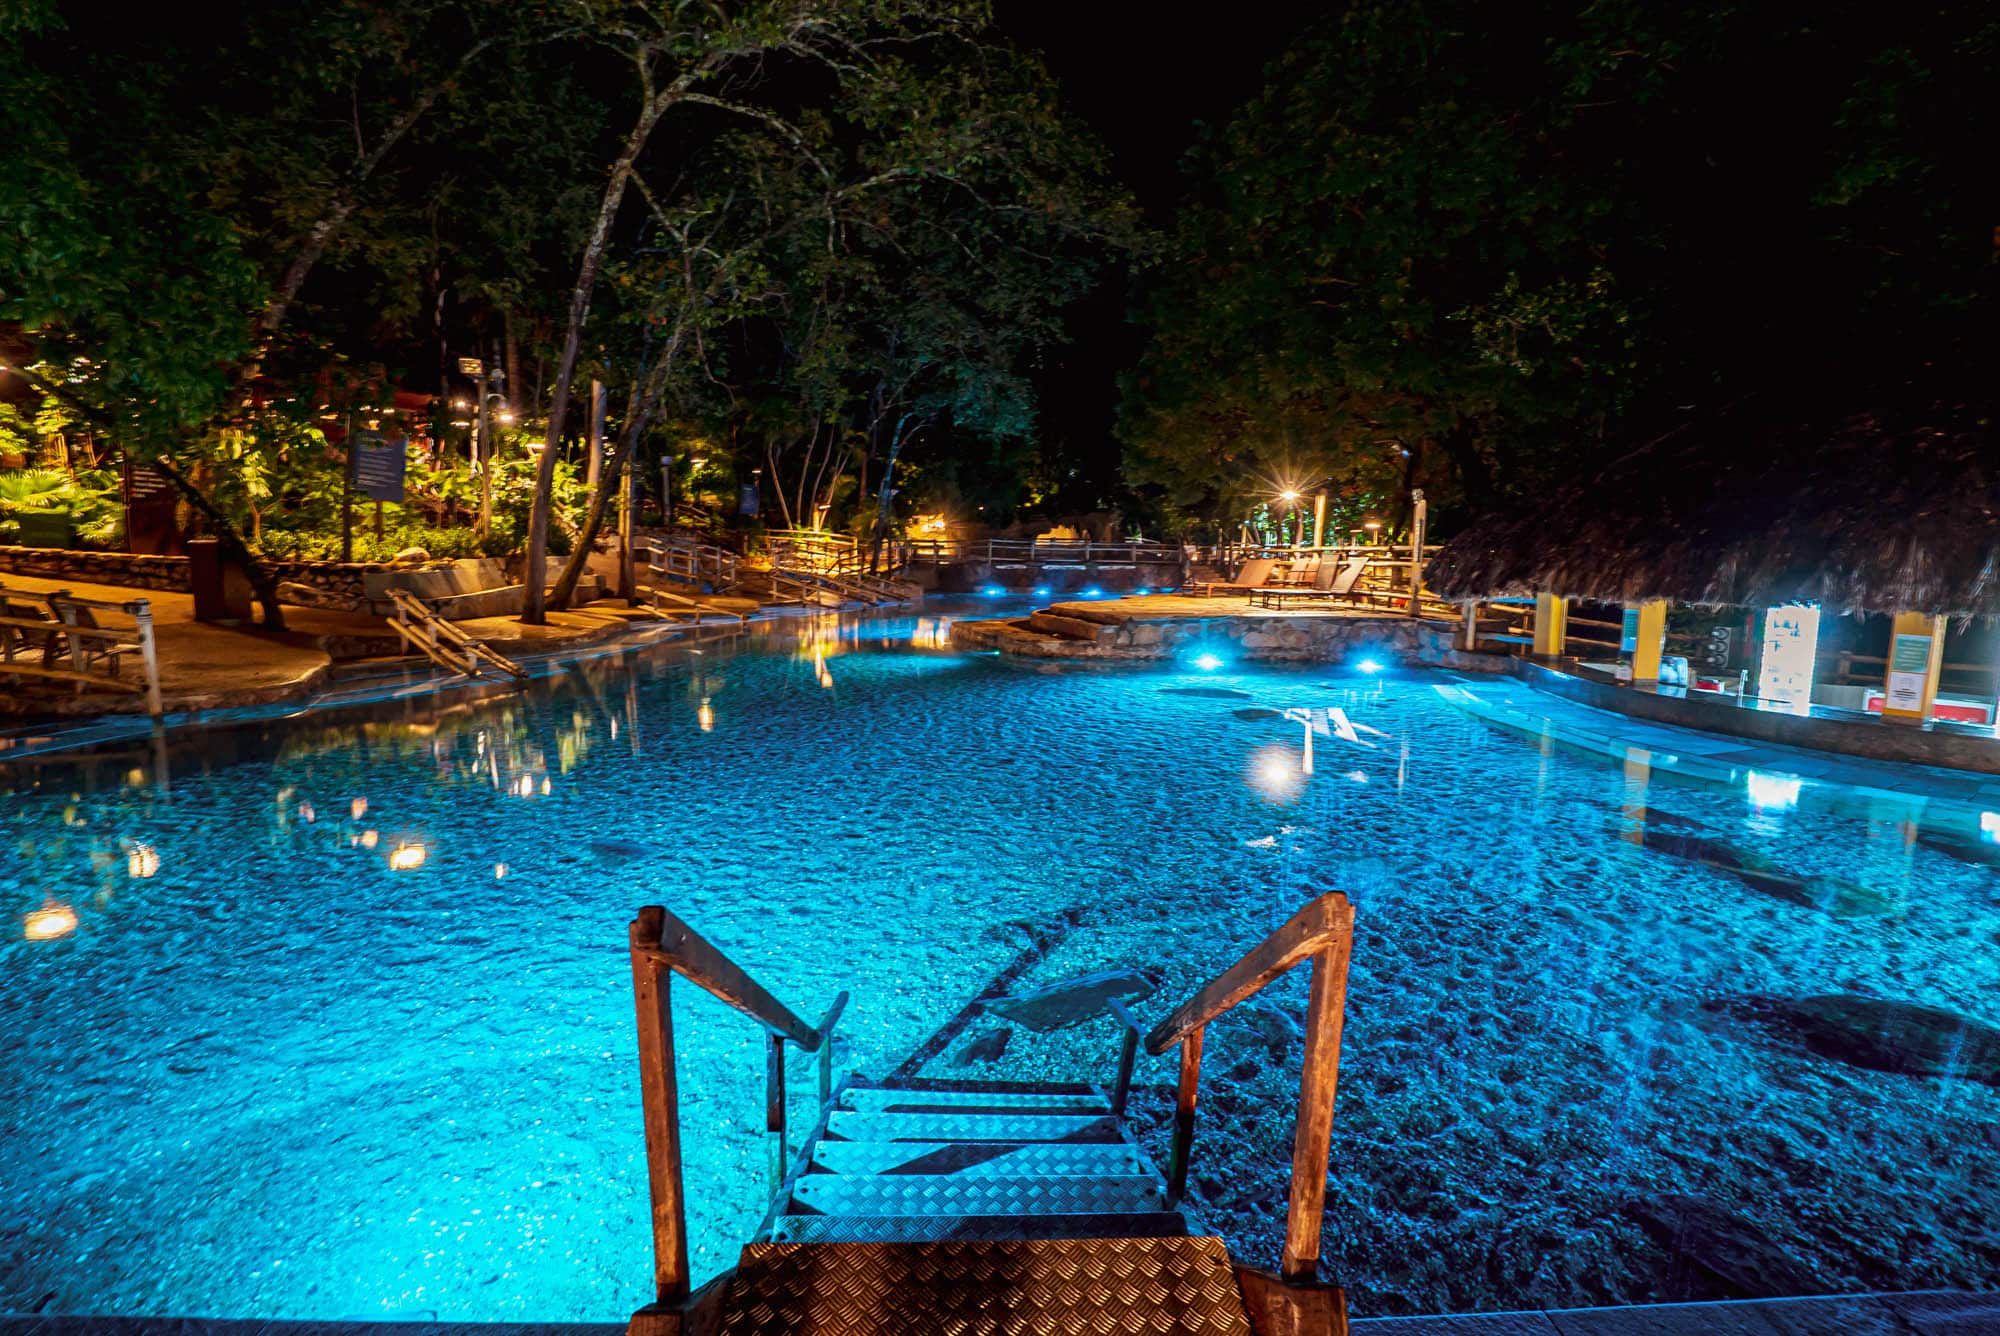 Rio Quente: Parque das Fontes, Hot Park, guia completo dos hotéis